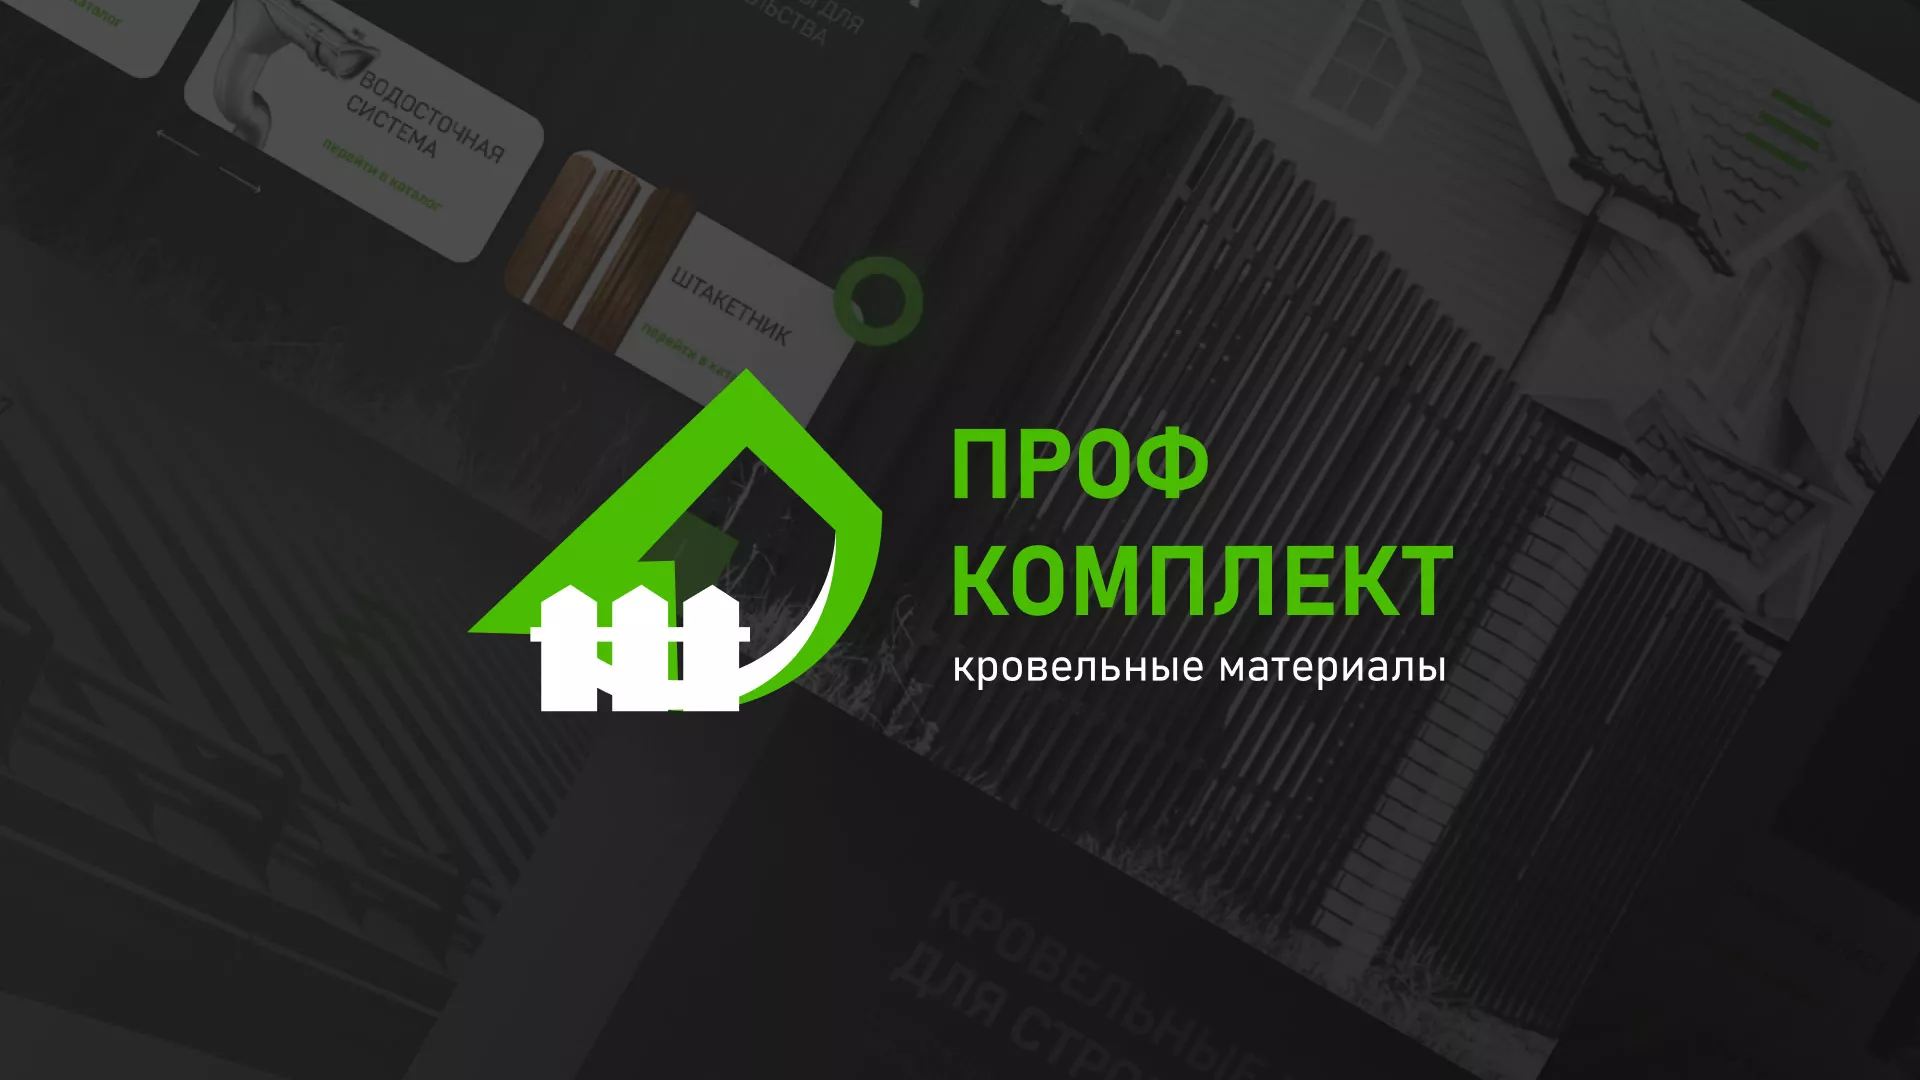 Создание сайта компании «Проф Комплект» в Константиновске